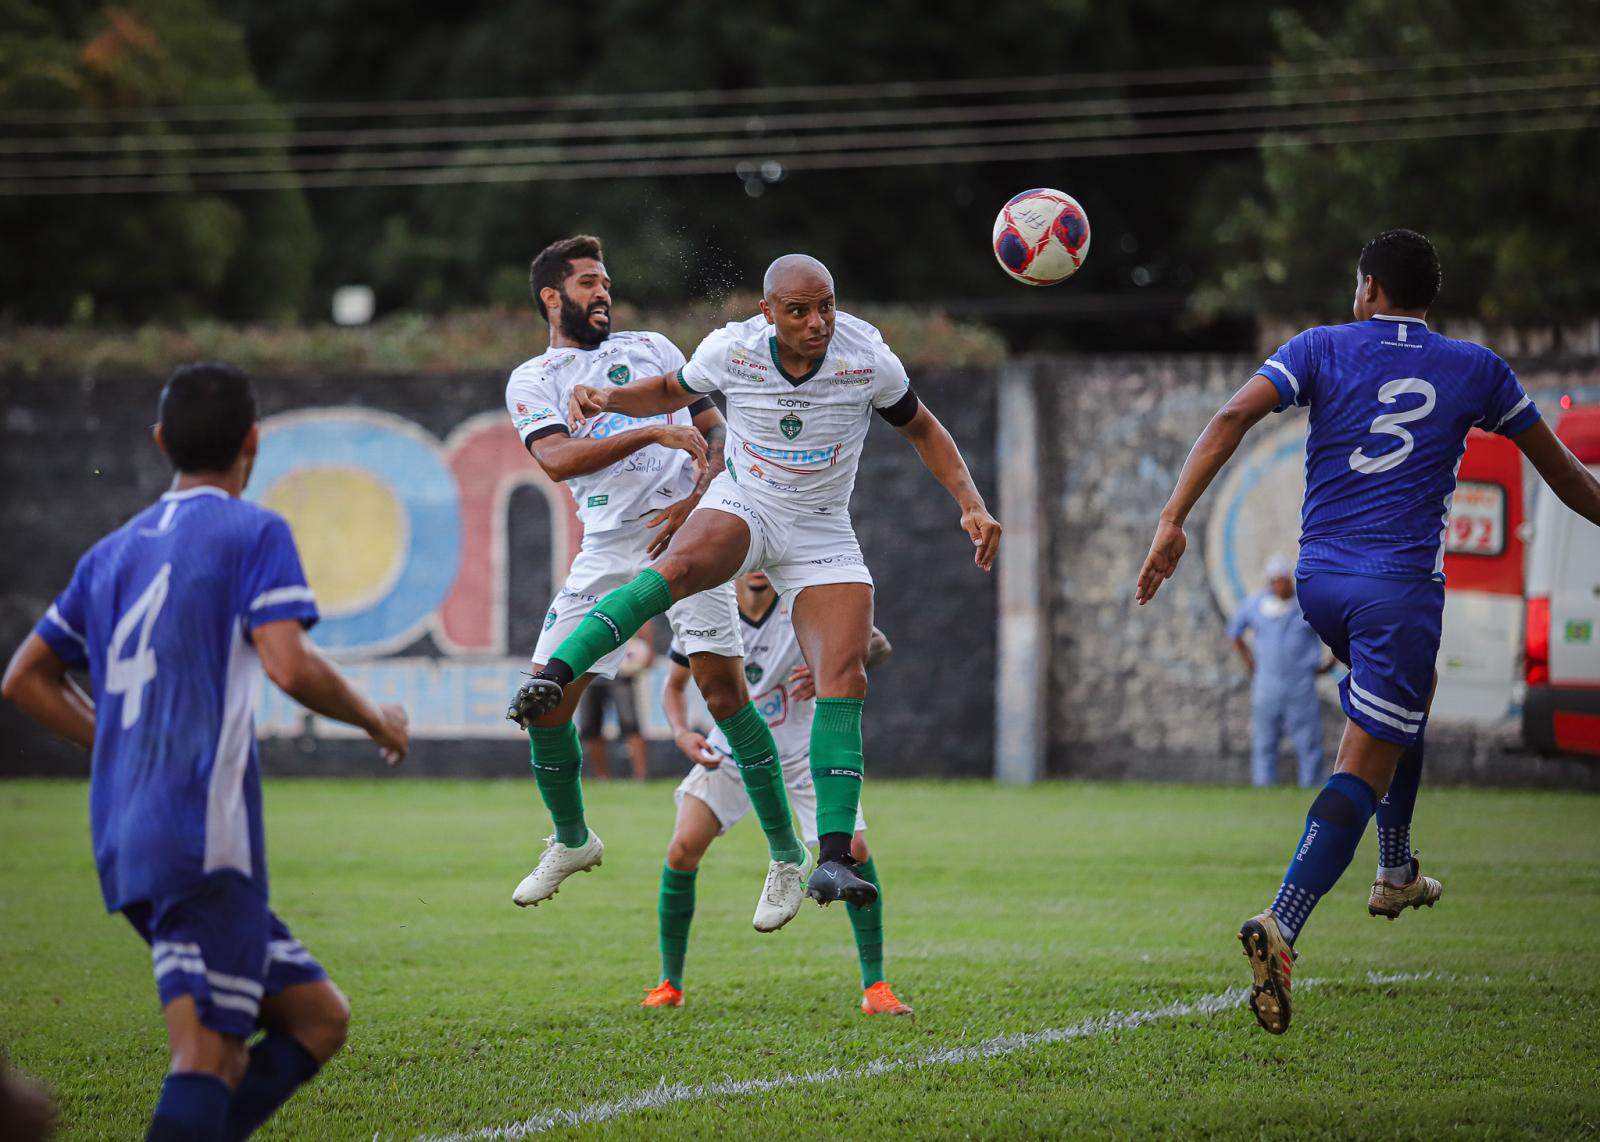 Serviço de jogo | Manaus vs JC| Oitava rodada Barezão 2022